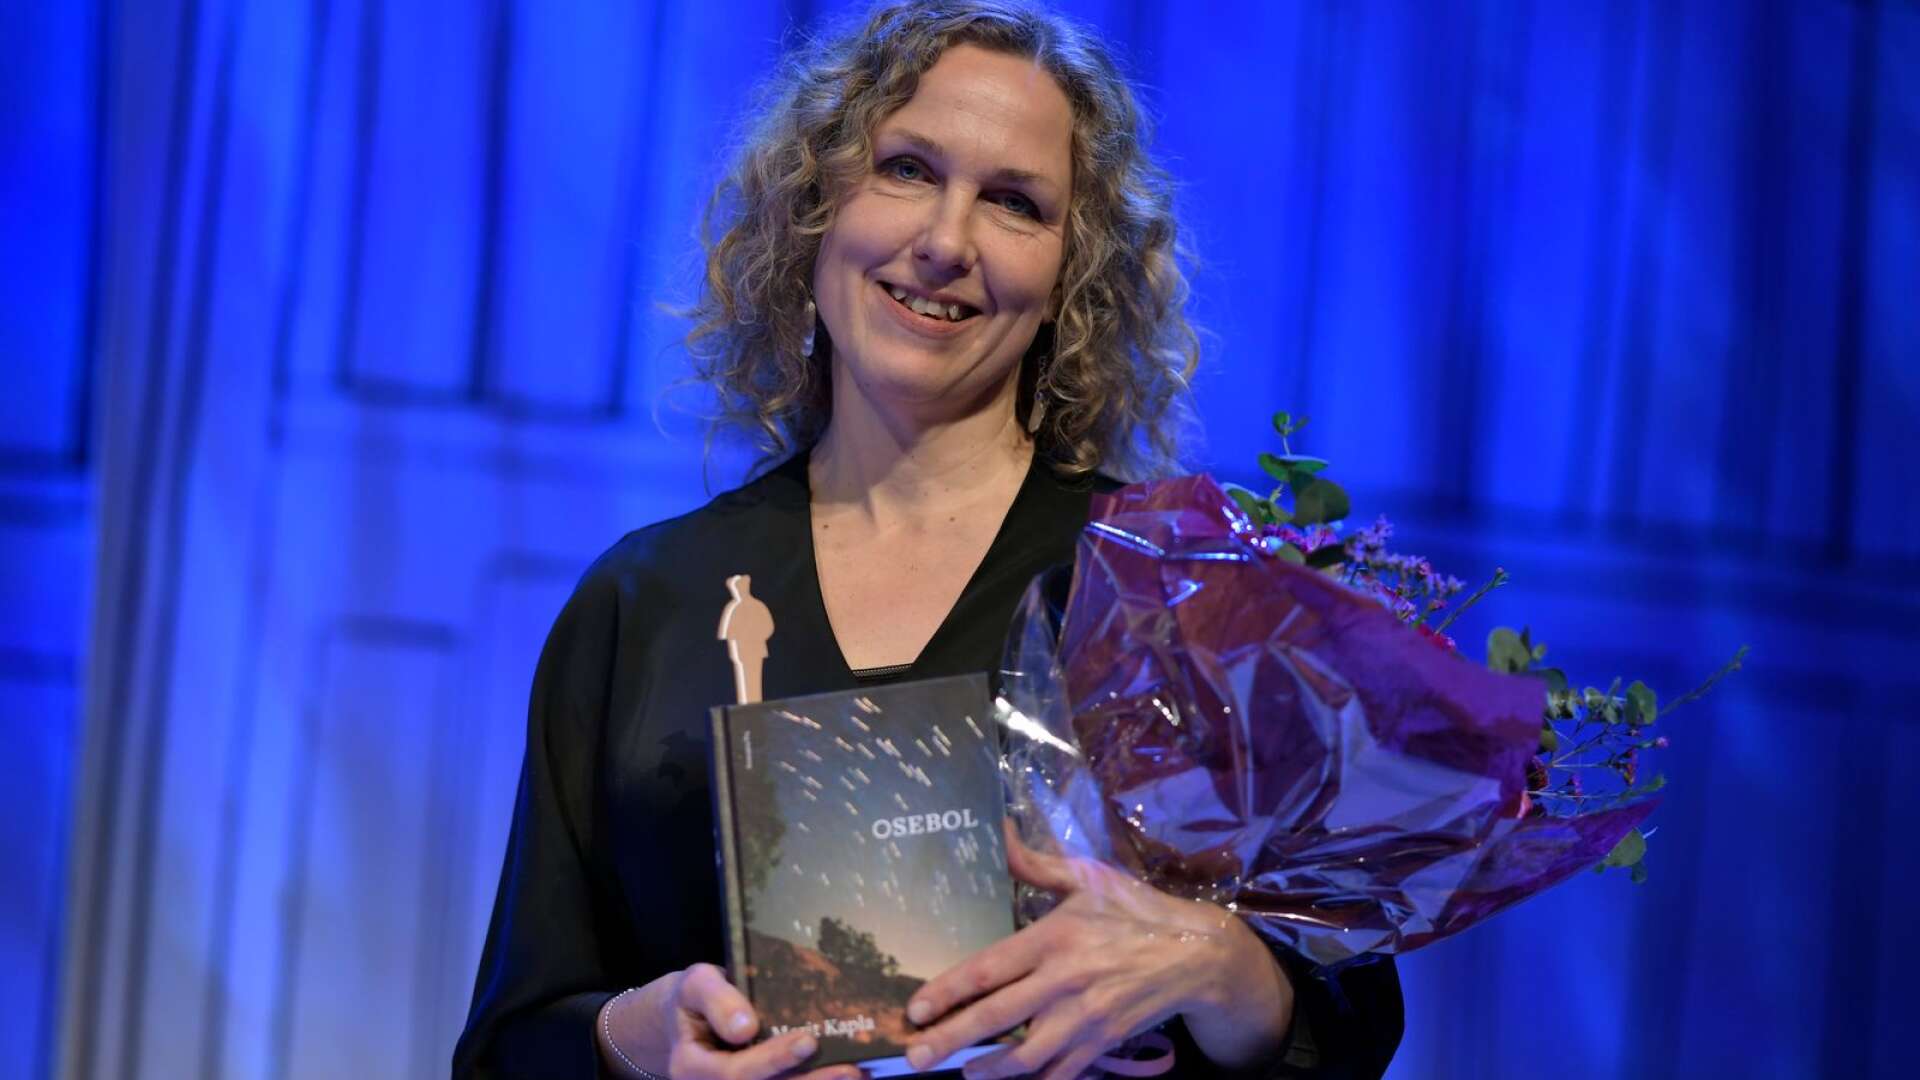 Marit Kapla tog hem priset Årets svenska skönlitterära bok för Osebol under Augustgalan i höstas. I april kommer hon till Årjängs bibliotek.